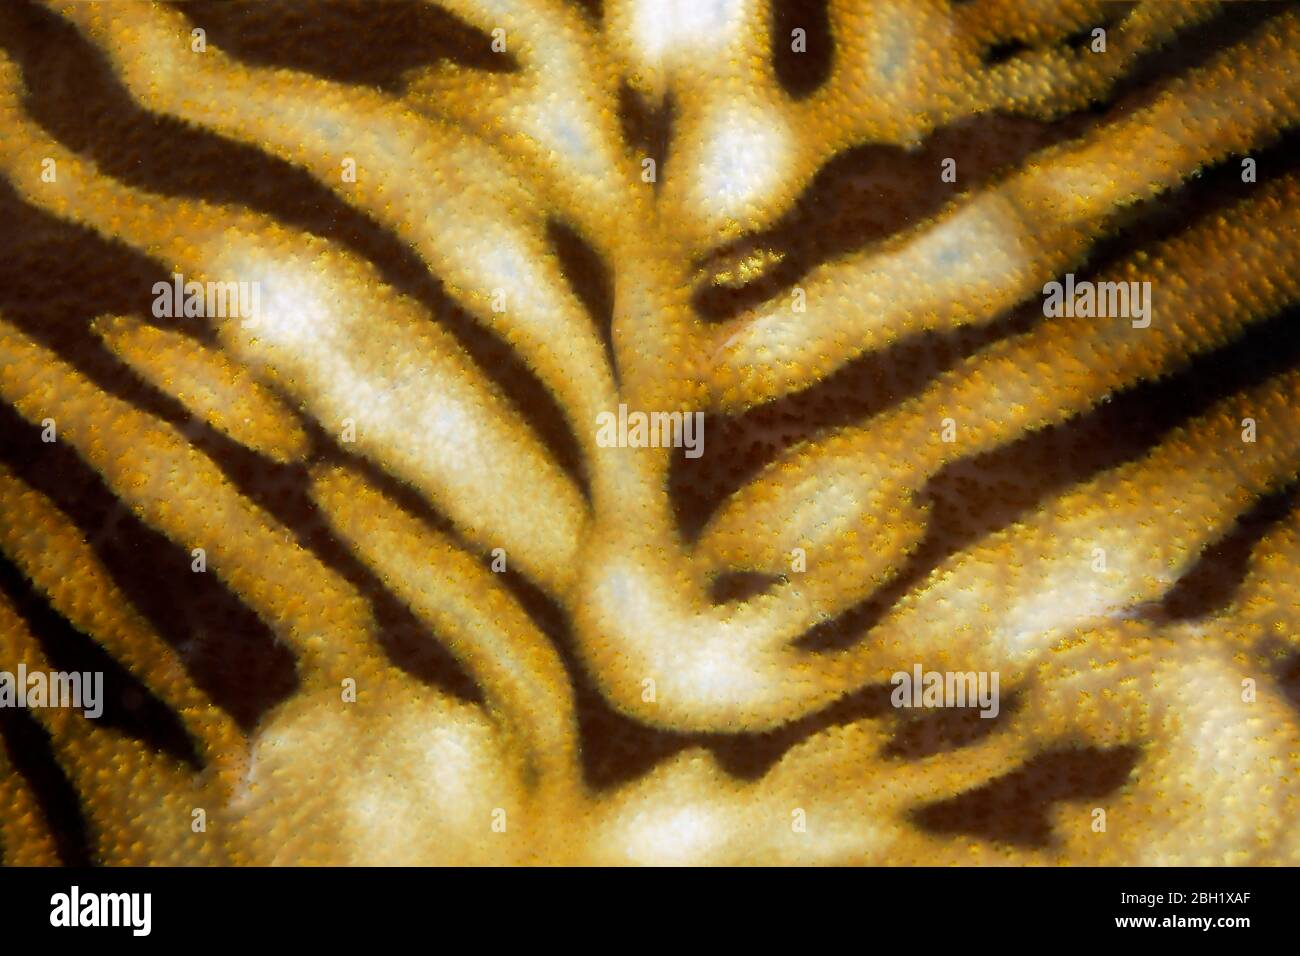 Patrón, detalle de almejas gigantes (Tridacna gigas), Océano Pacífico, Lago Sulu, Parque Nacional Marino del Arrecife Tubbataha, Provincia de Palawan, Filipinas Foto de stock